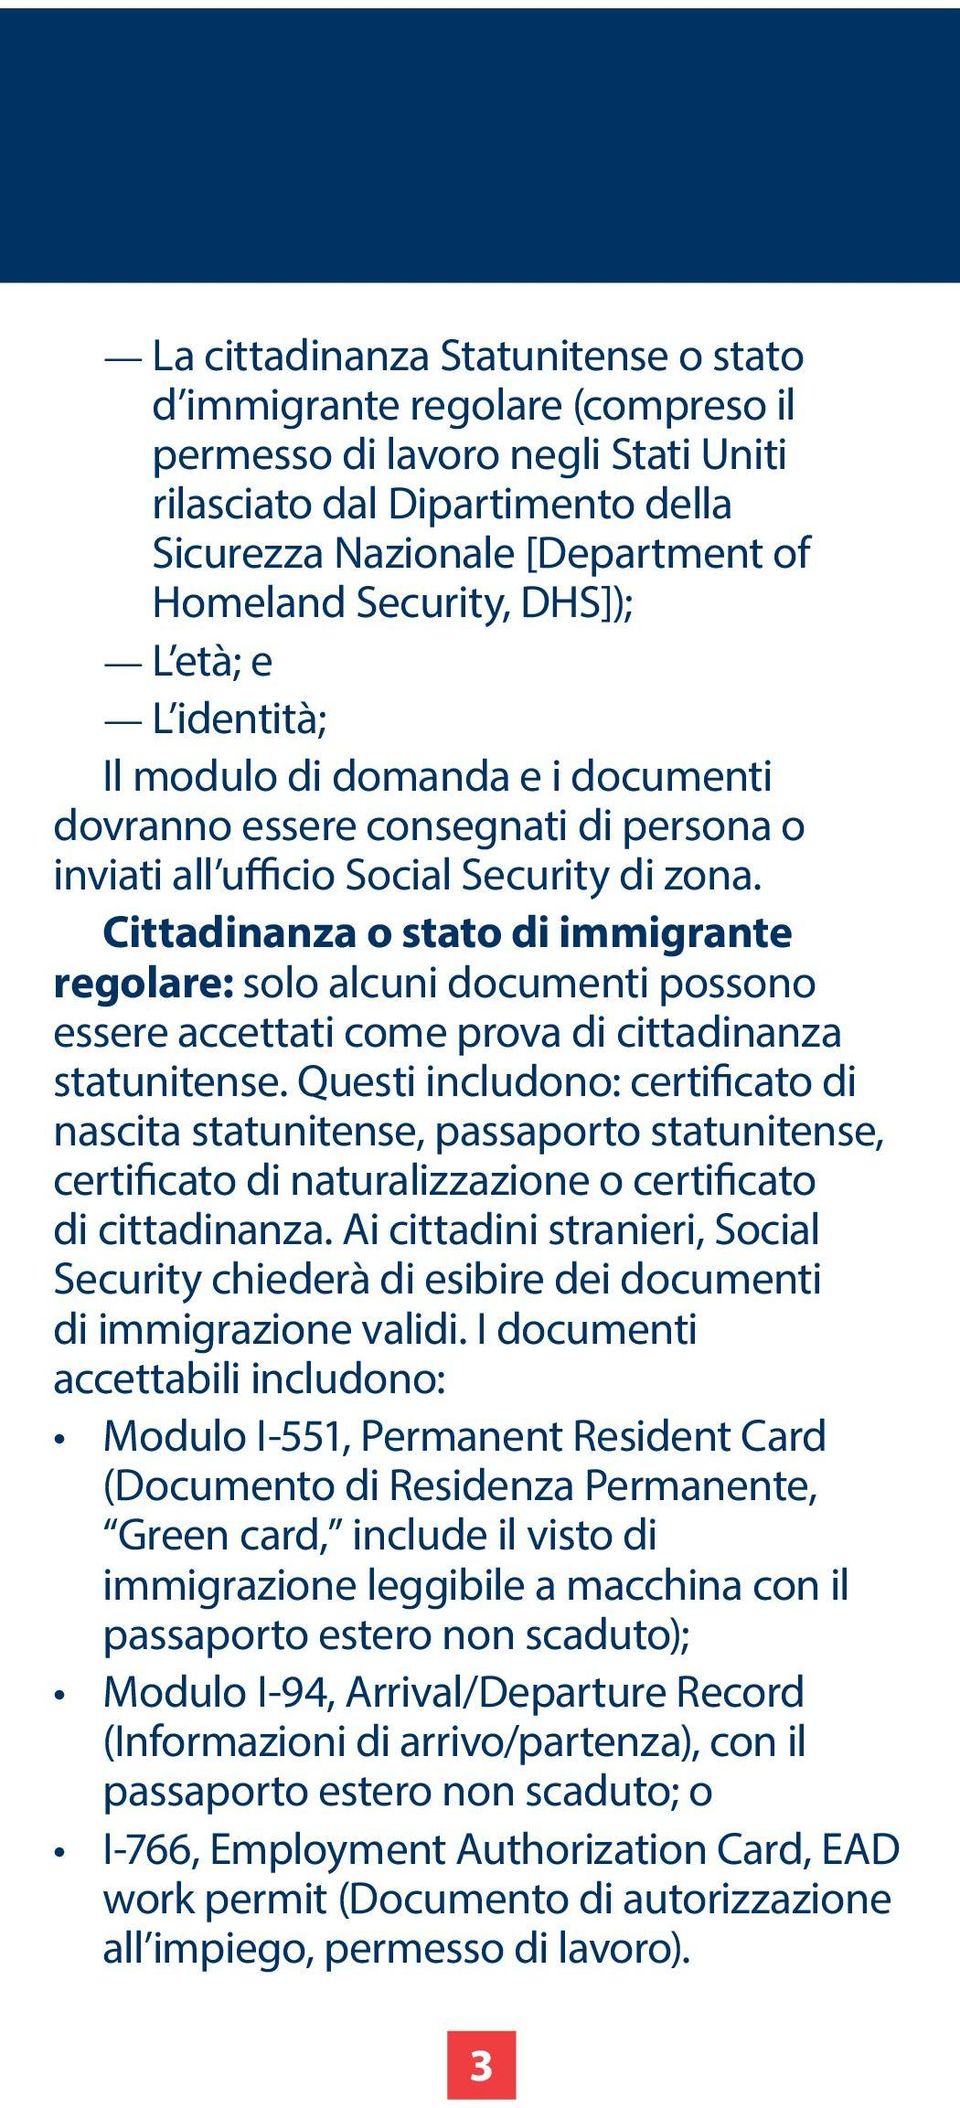 Cittadinanza o stato di immigrante regolare: solo alcuni documenti possono essere accettati come prova di cittadinanza statunitense.